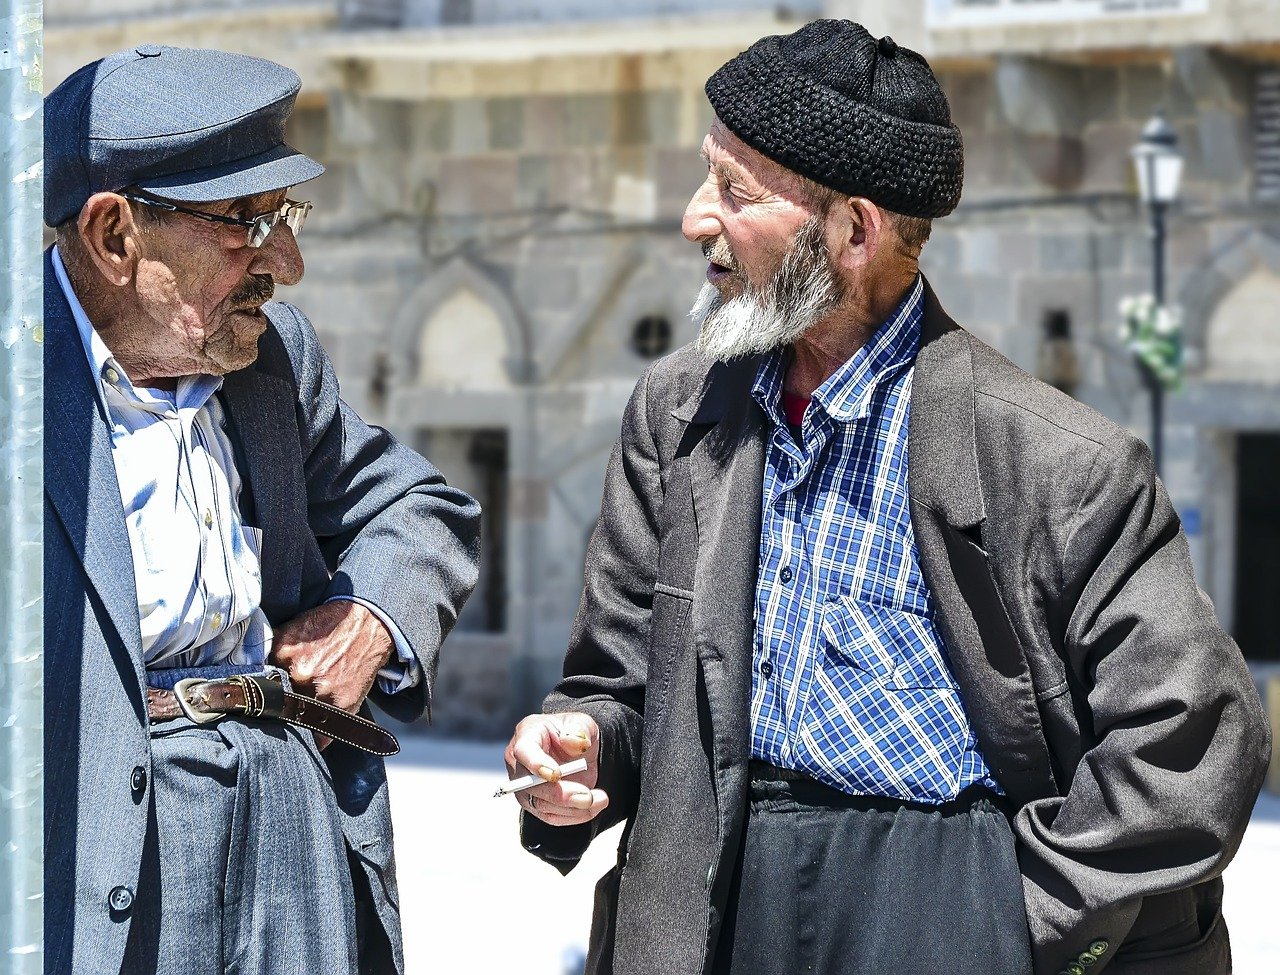 Spoločenské kontakty sú pre starých ľudí dôležité. (Zdroj Pixabay, Kredit: free)